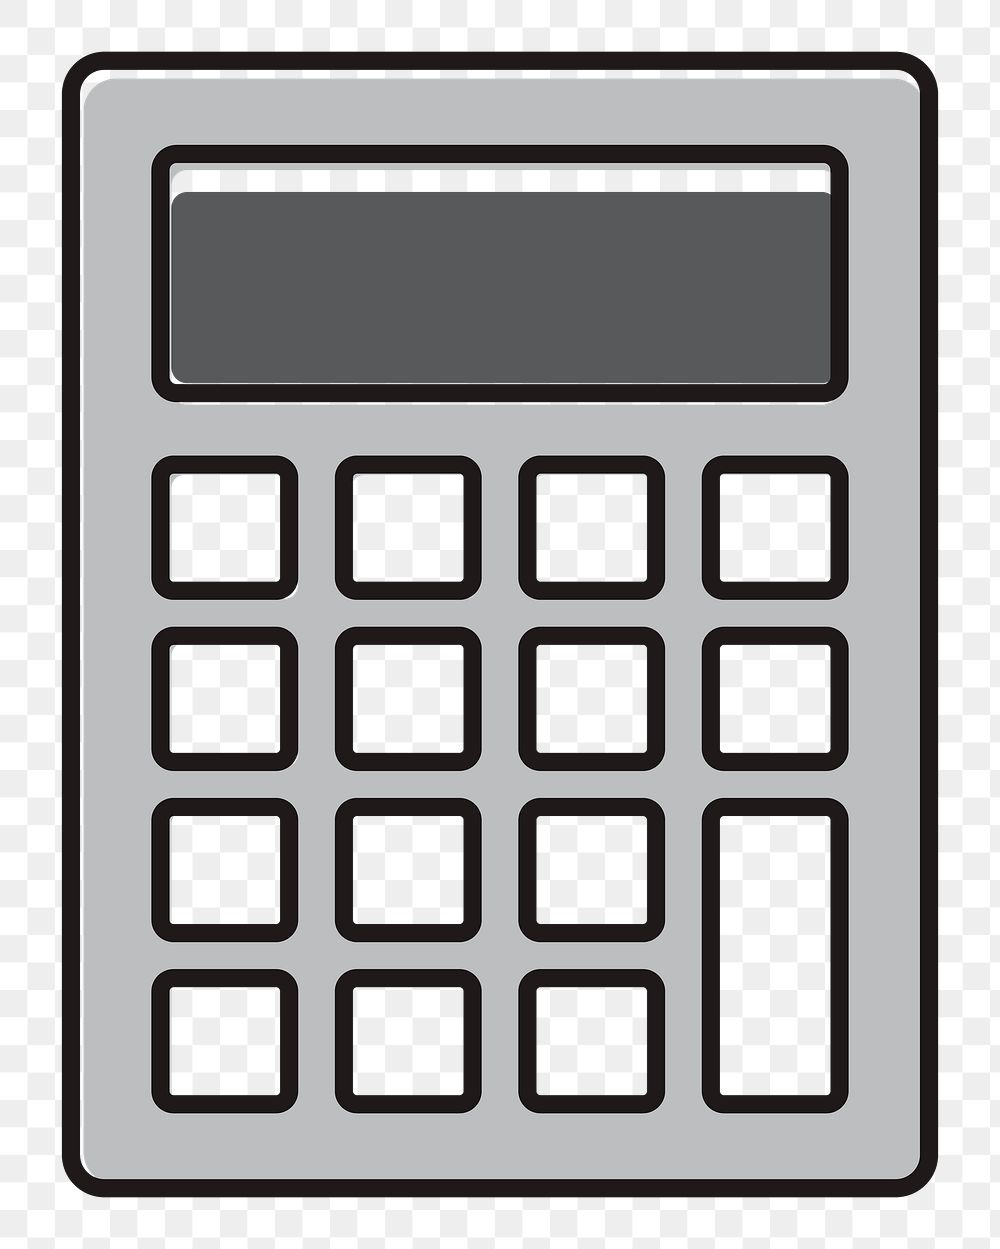 Calculator png illustration, transparent background